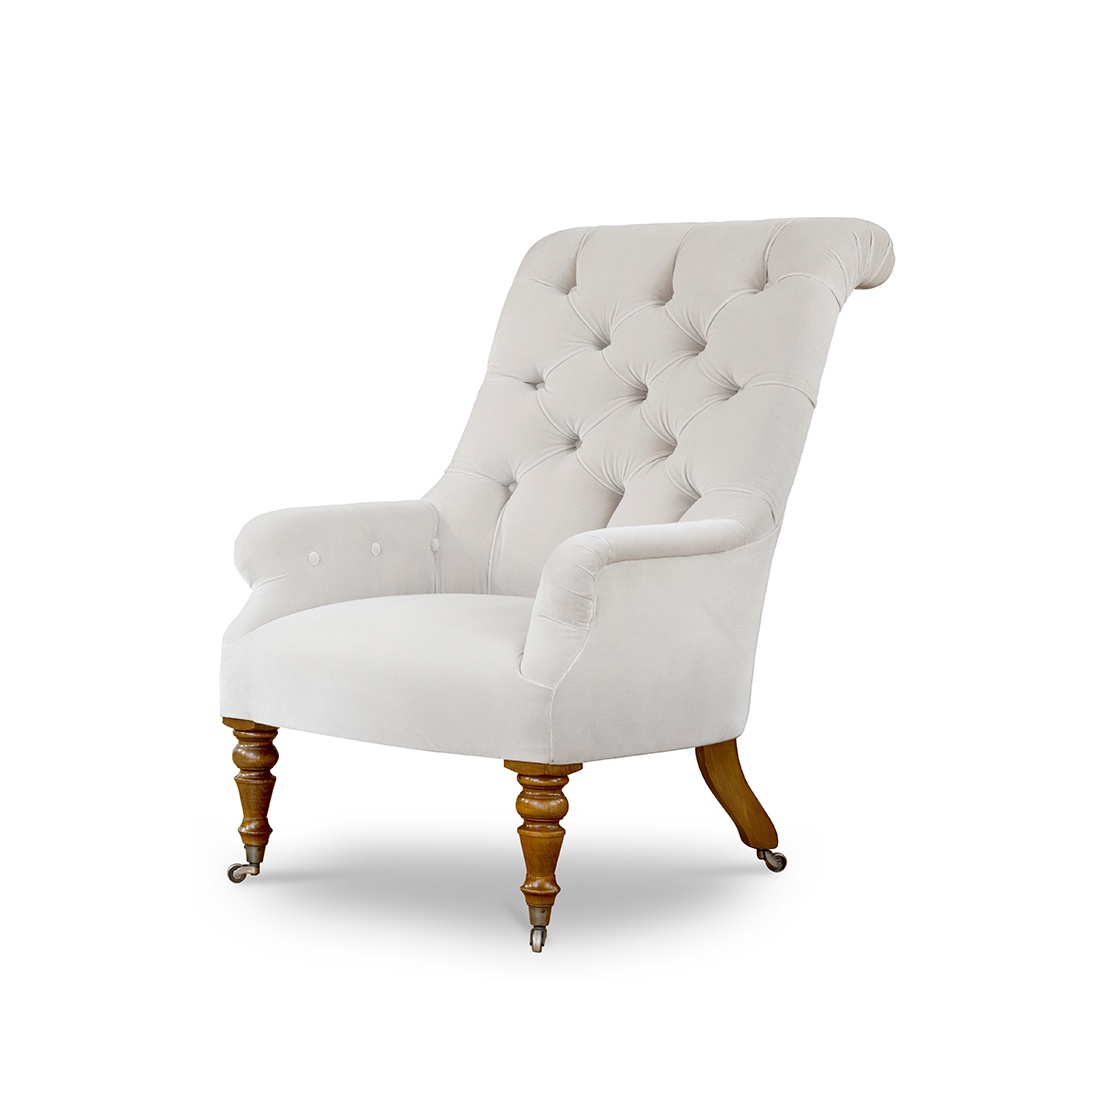 Waterford chair in Zafra cotton velvet - Ecru - Beaumont & Fletcher